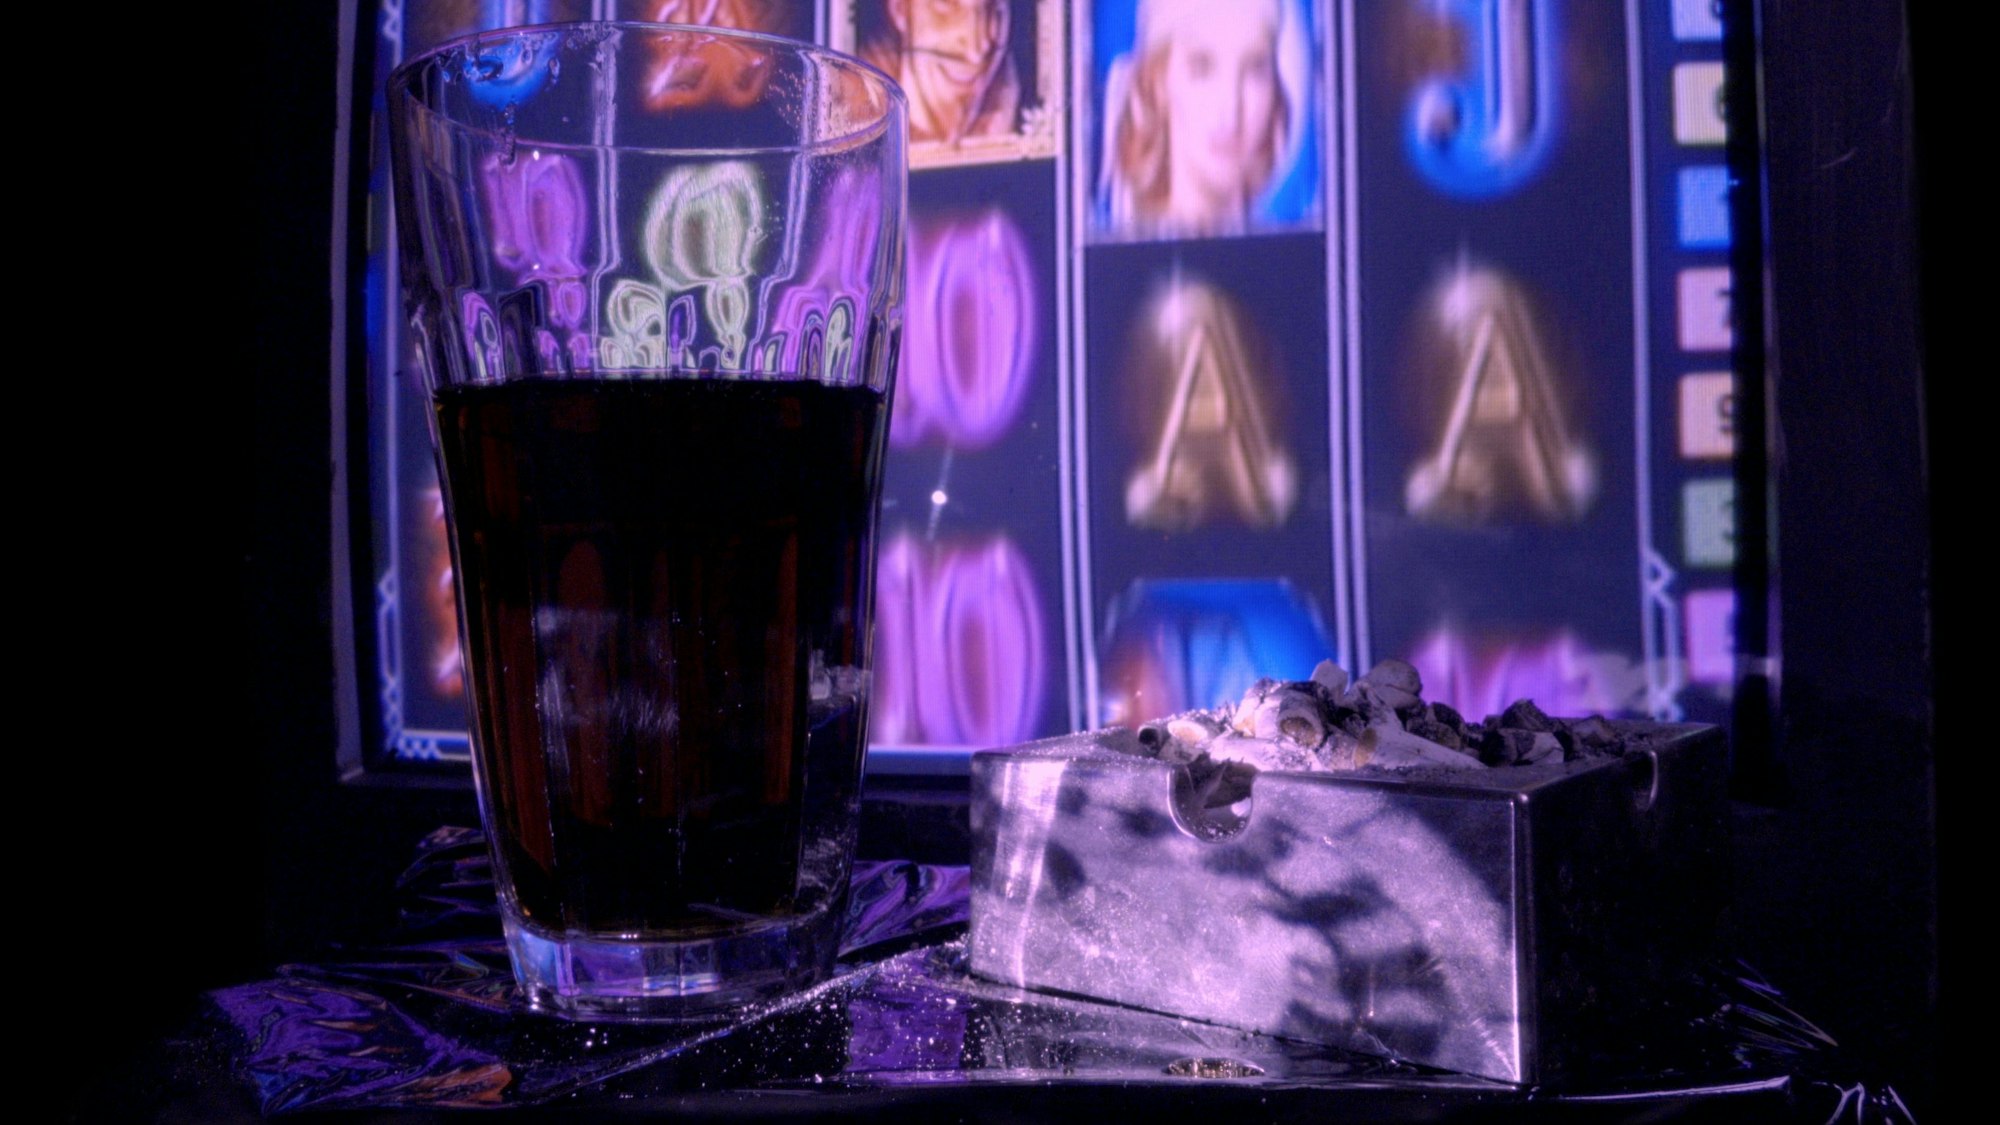 Vor einer Videoinstallation, die einen Glückspielautomaten zeigt, stehen ein Glas mit Cola und ein voller Aschenbecher.